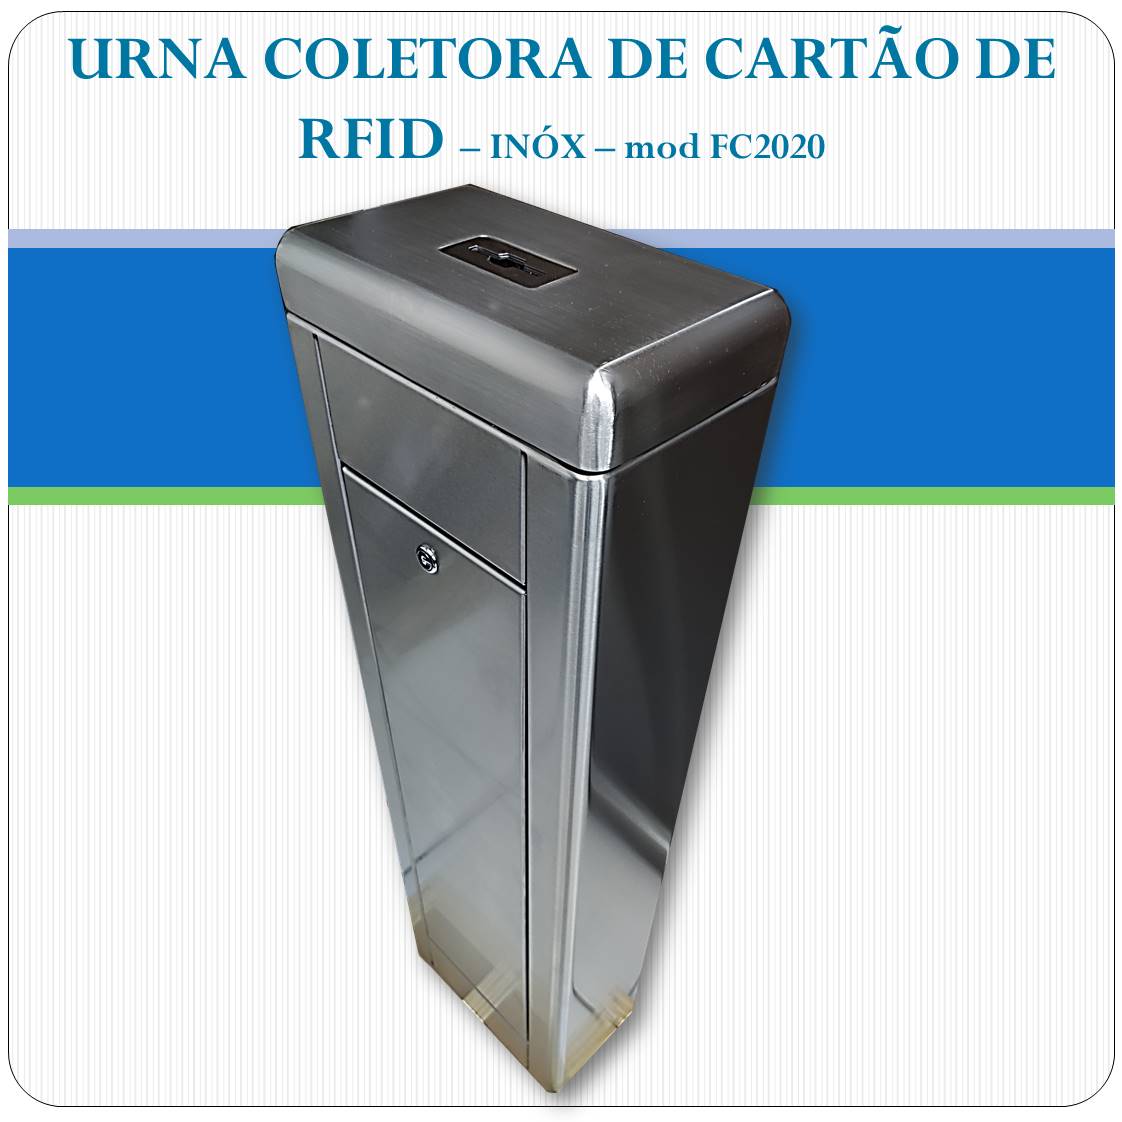 Urna Coletora de cartão RFID - FC2020